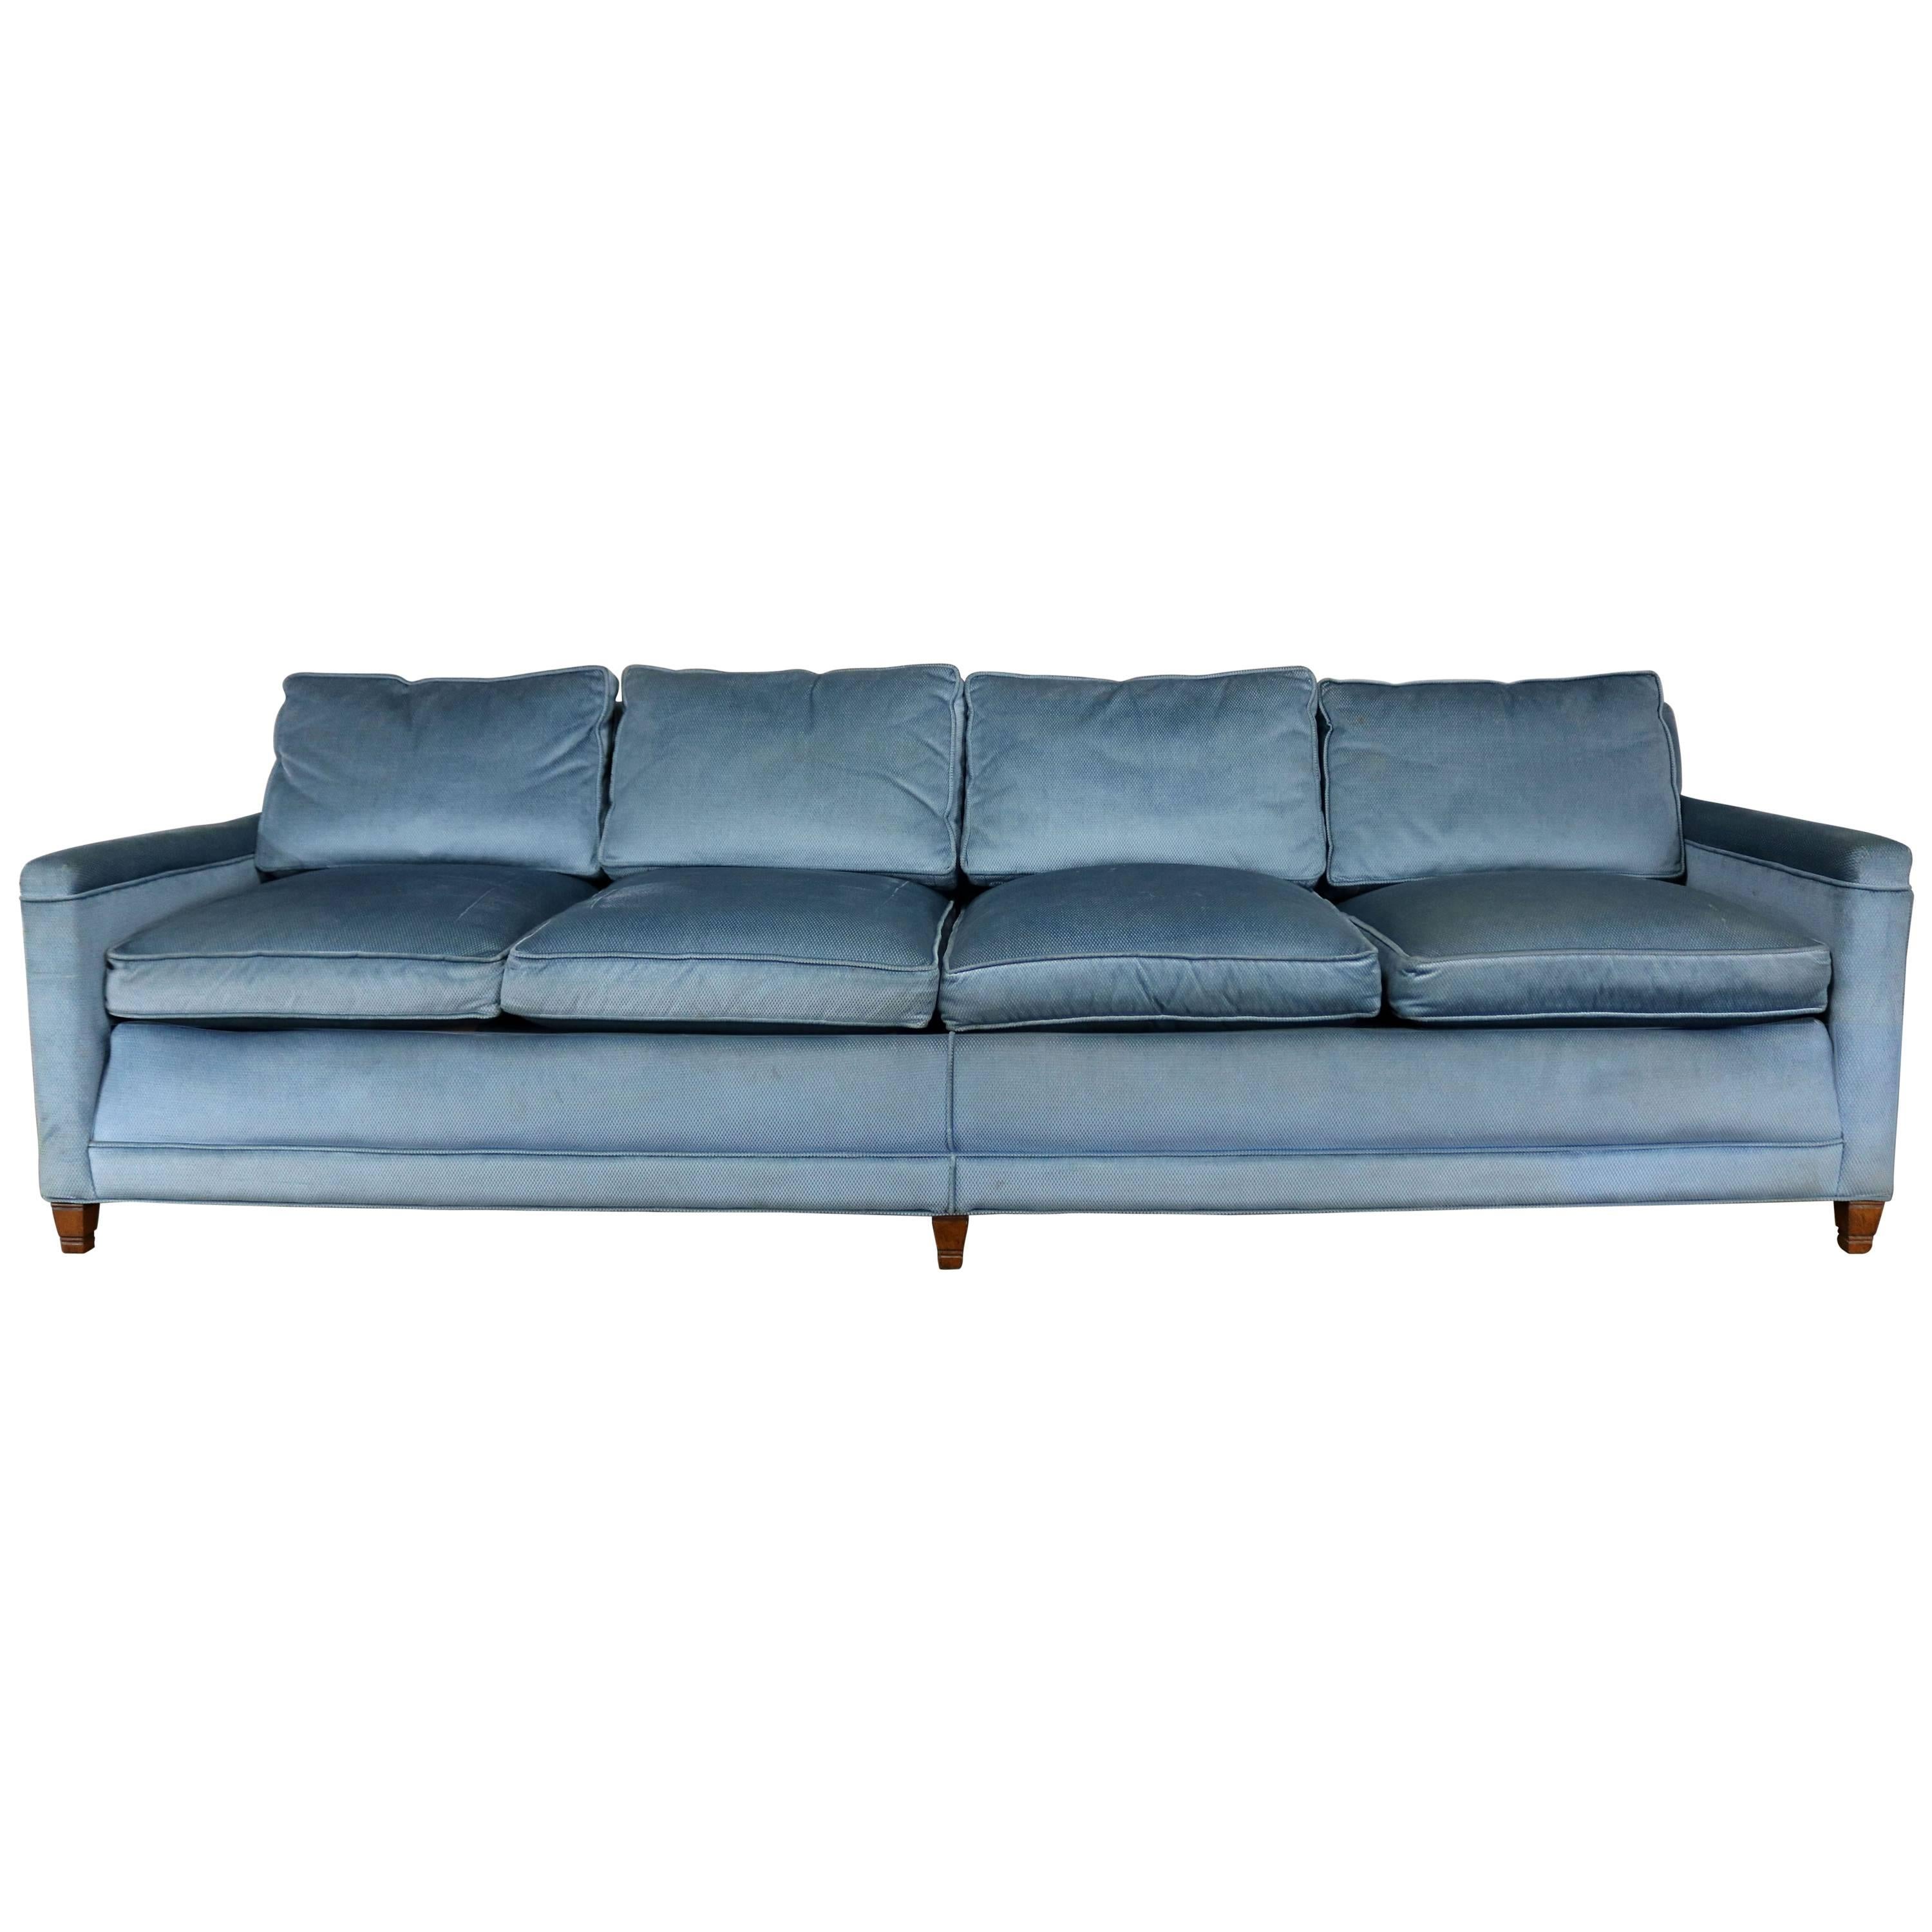 Powder Blue Lawson Style Four Cushion Sofa Vintage, Mid-Century Modern